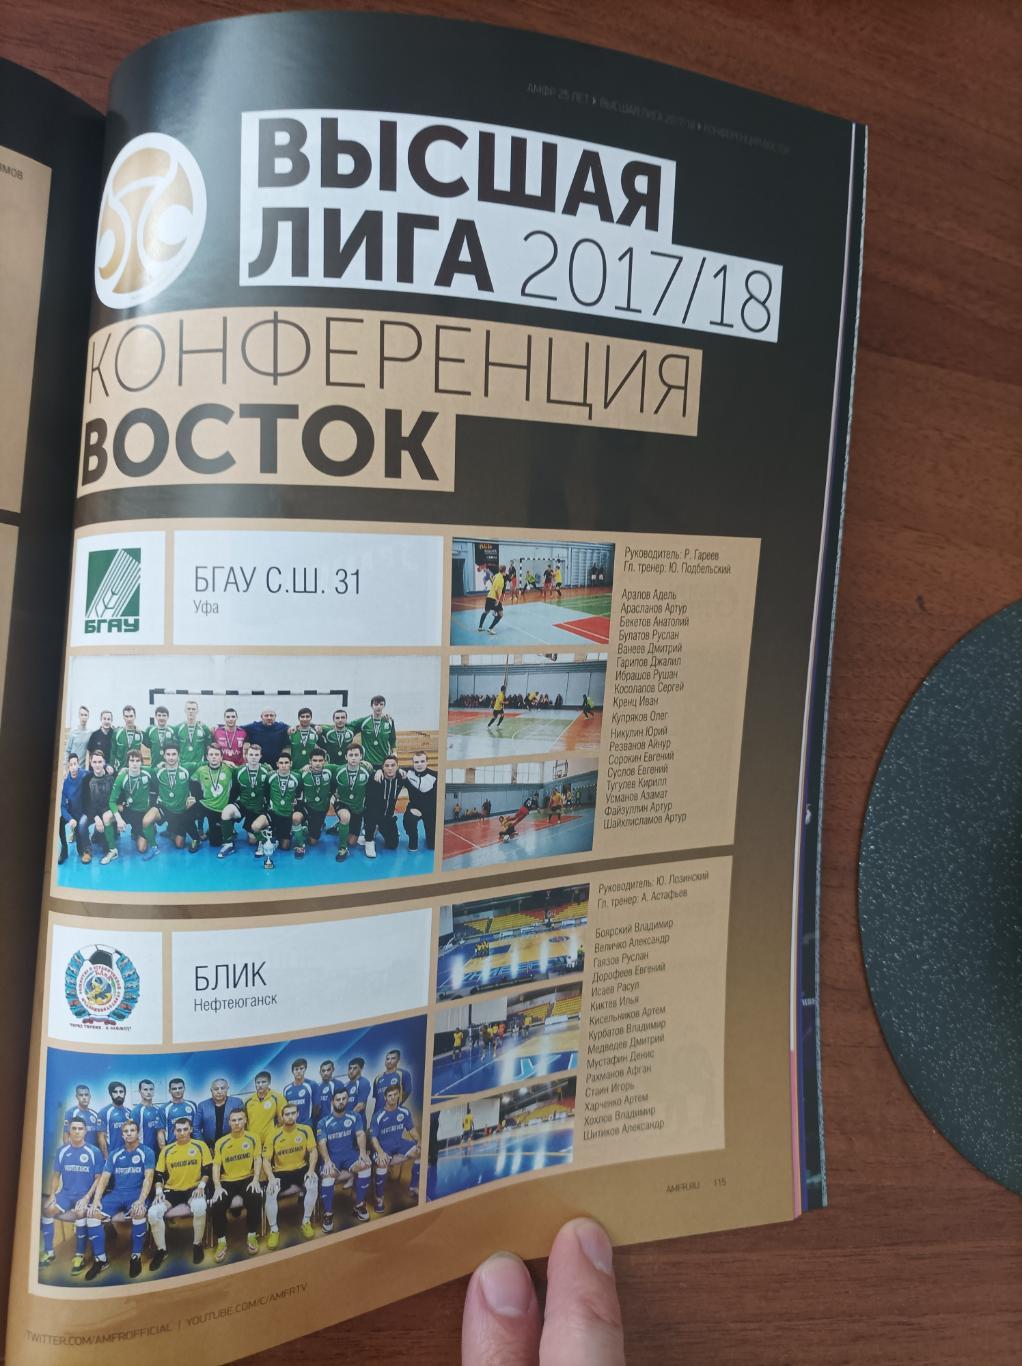 Мини-футбол в России 2017/18. 25 лет Российскому мини-футболу 6